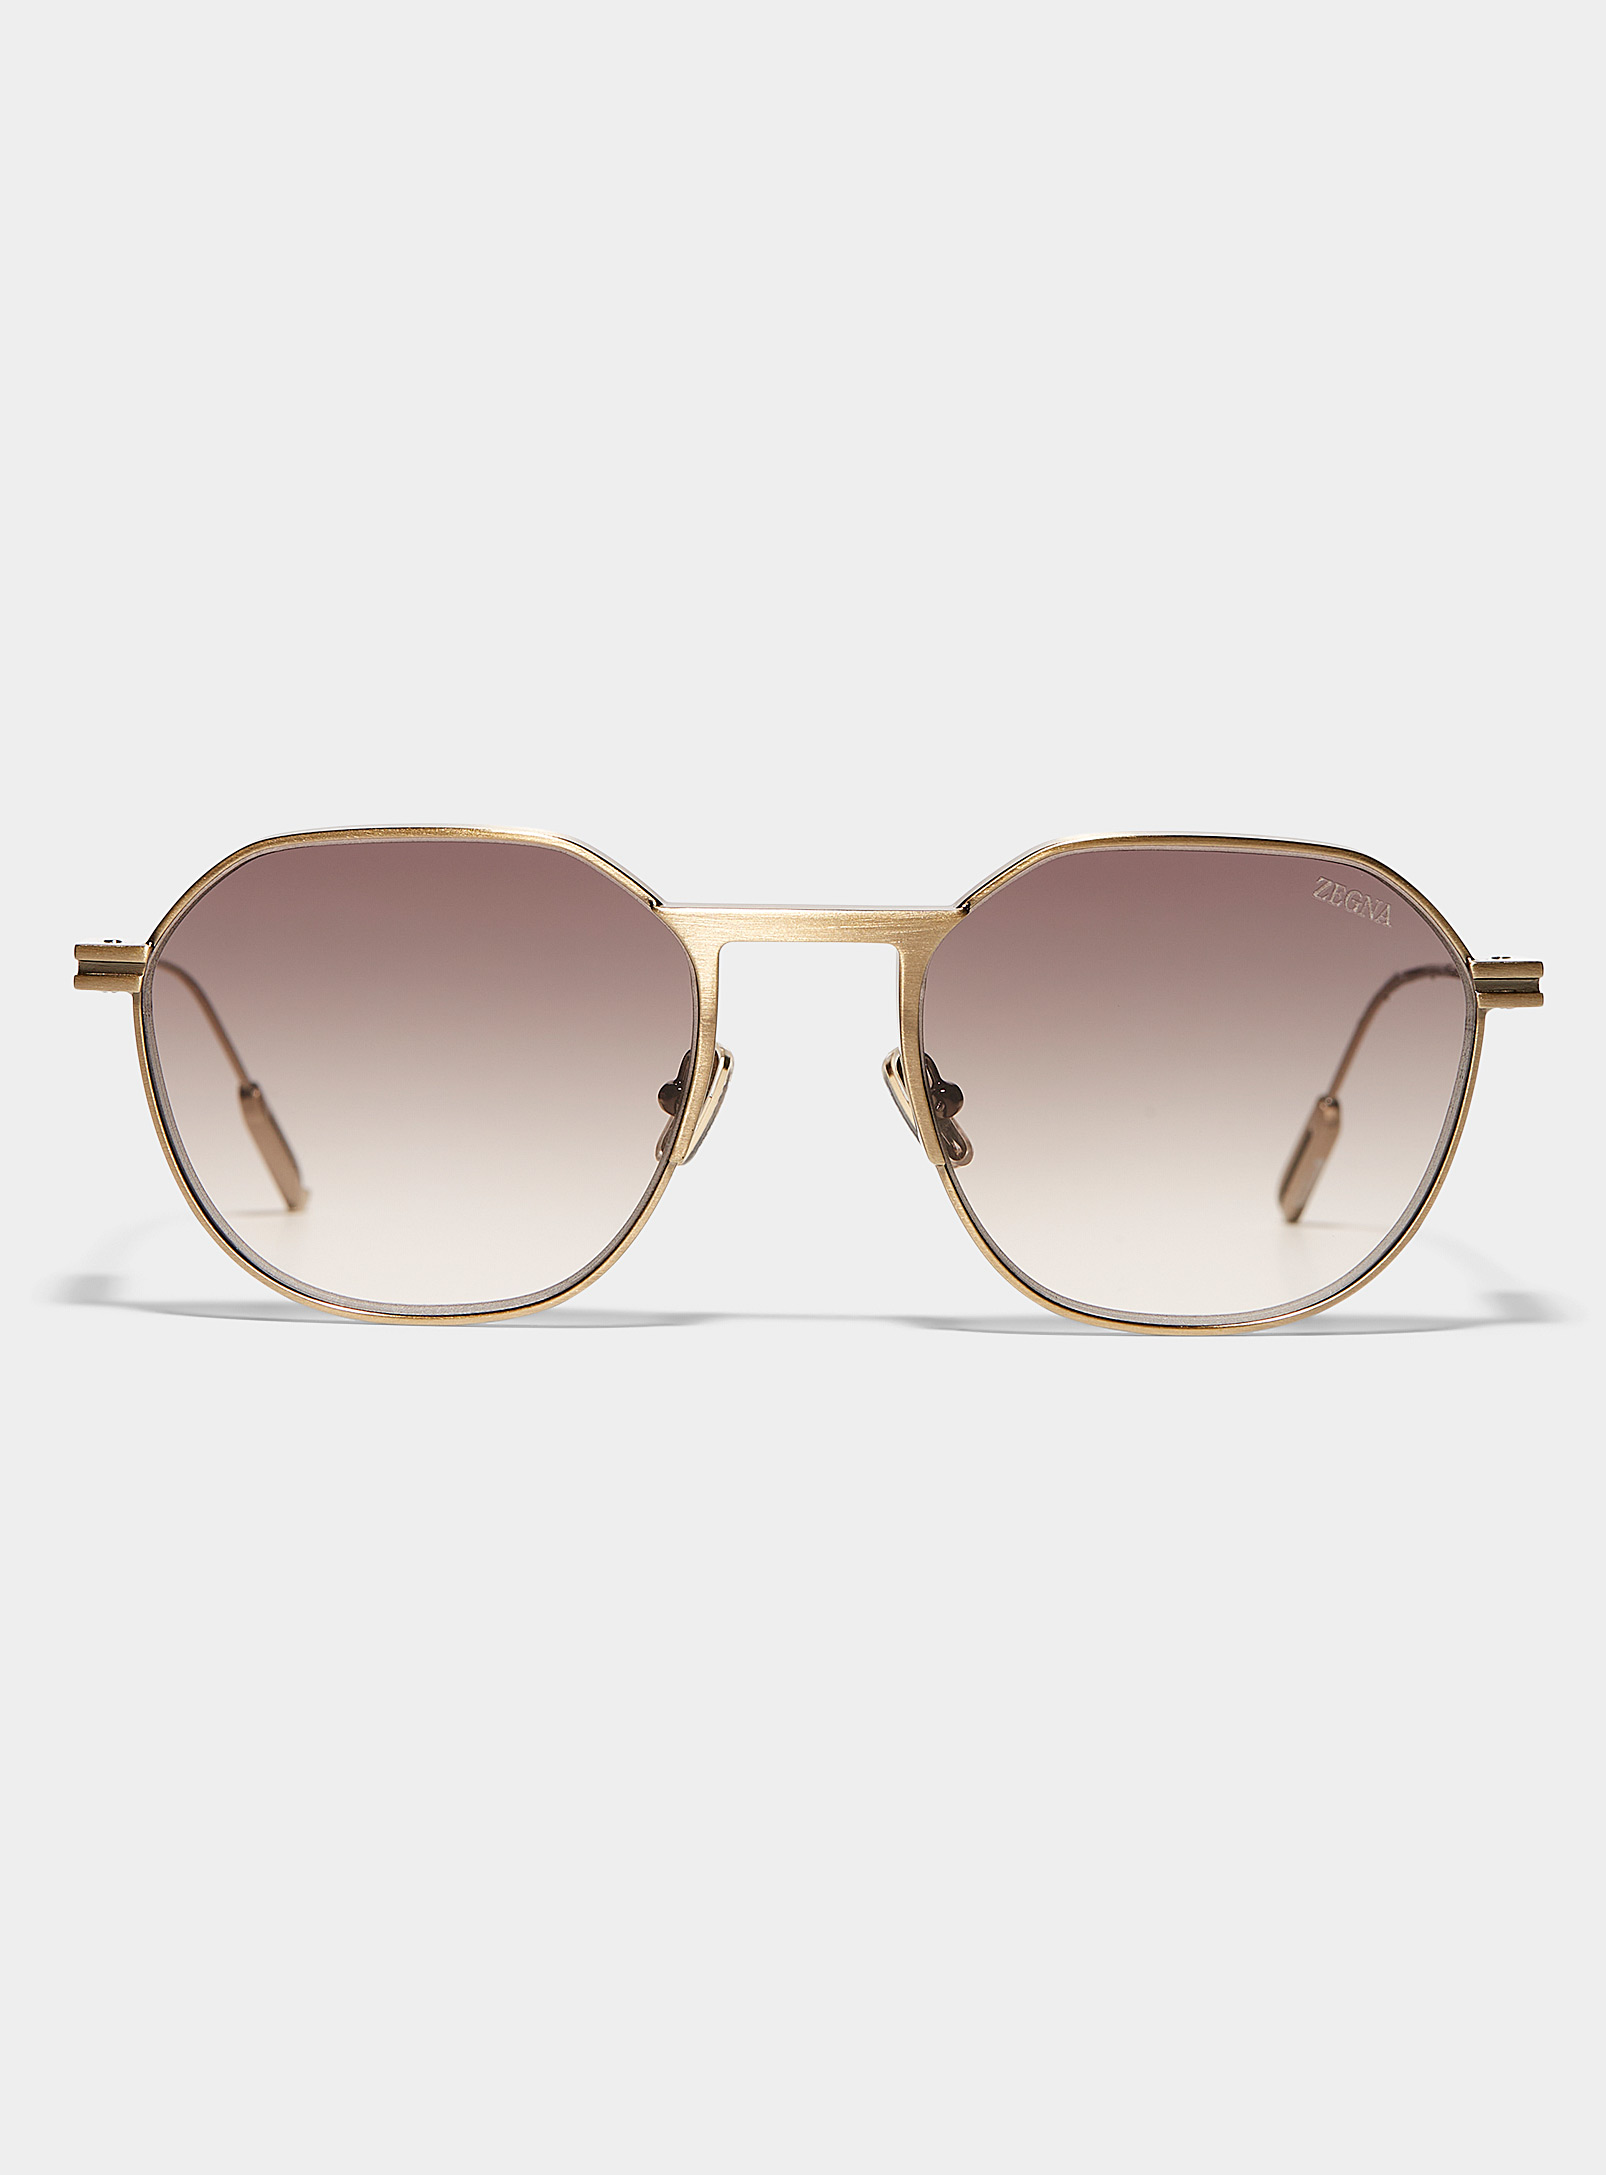 Zegna - Les lunettes de soleil carrées bronze